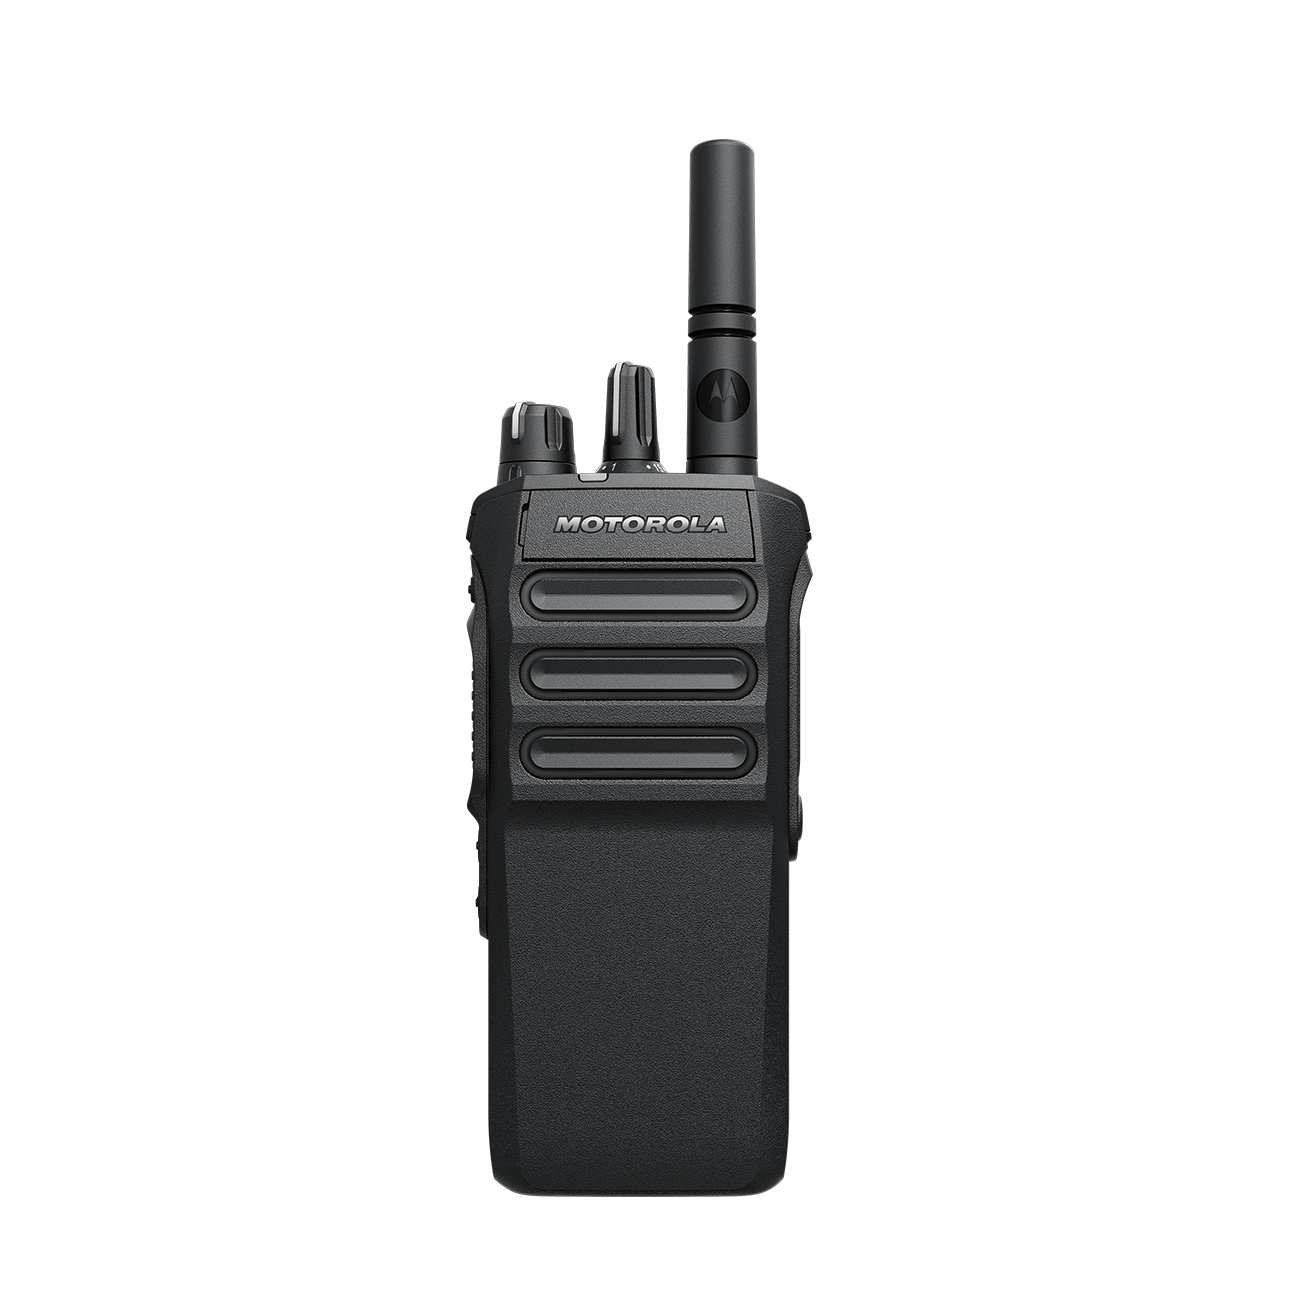 Motorola Mototrbo R7a Portable Non-Keypad Radio 